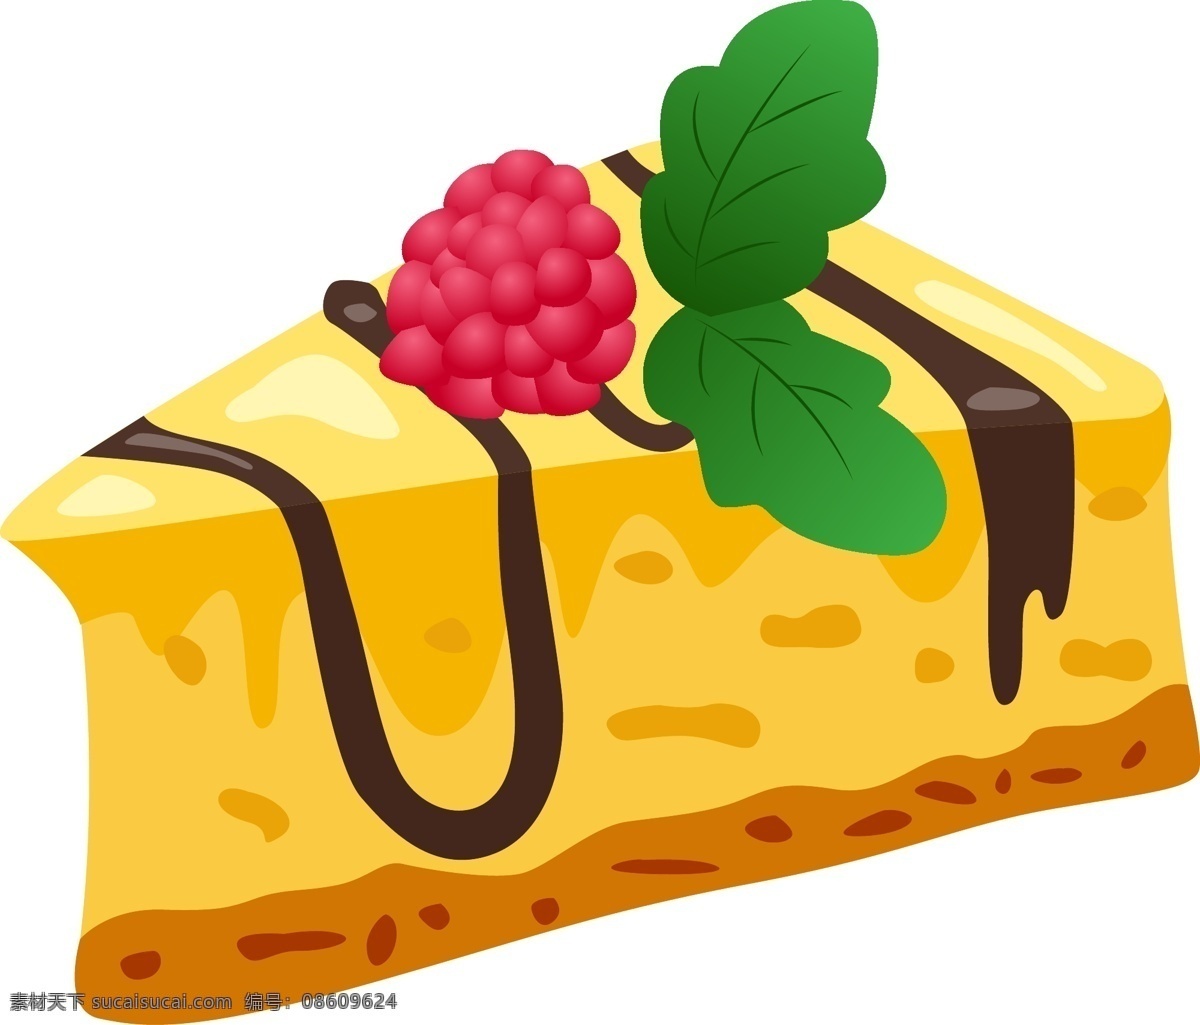 奶油 蛋糕 免 扣 illustrator 烘焙食品 cg 卡通 快餐 手绘 插画 板绘 点心 绘画 美食 食品